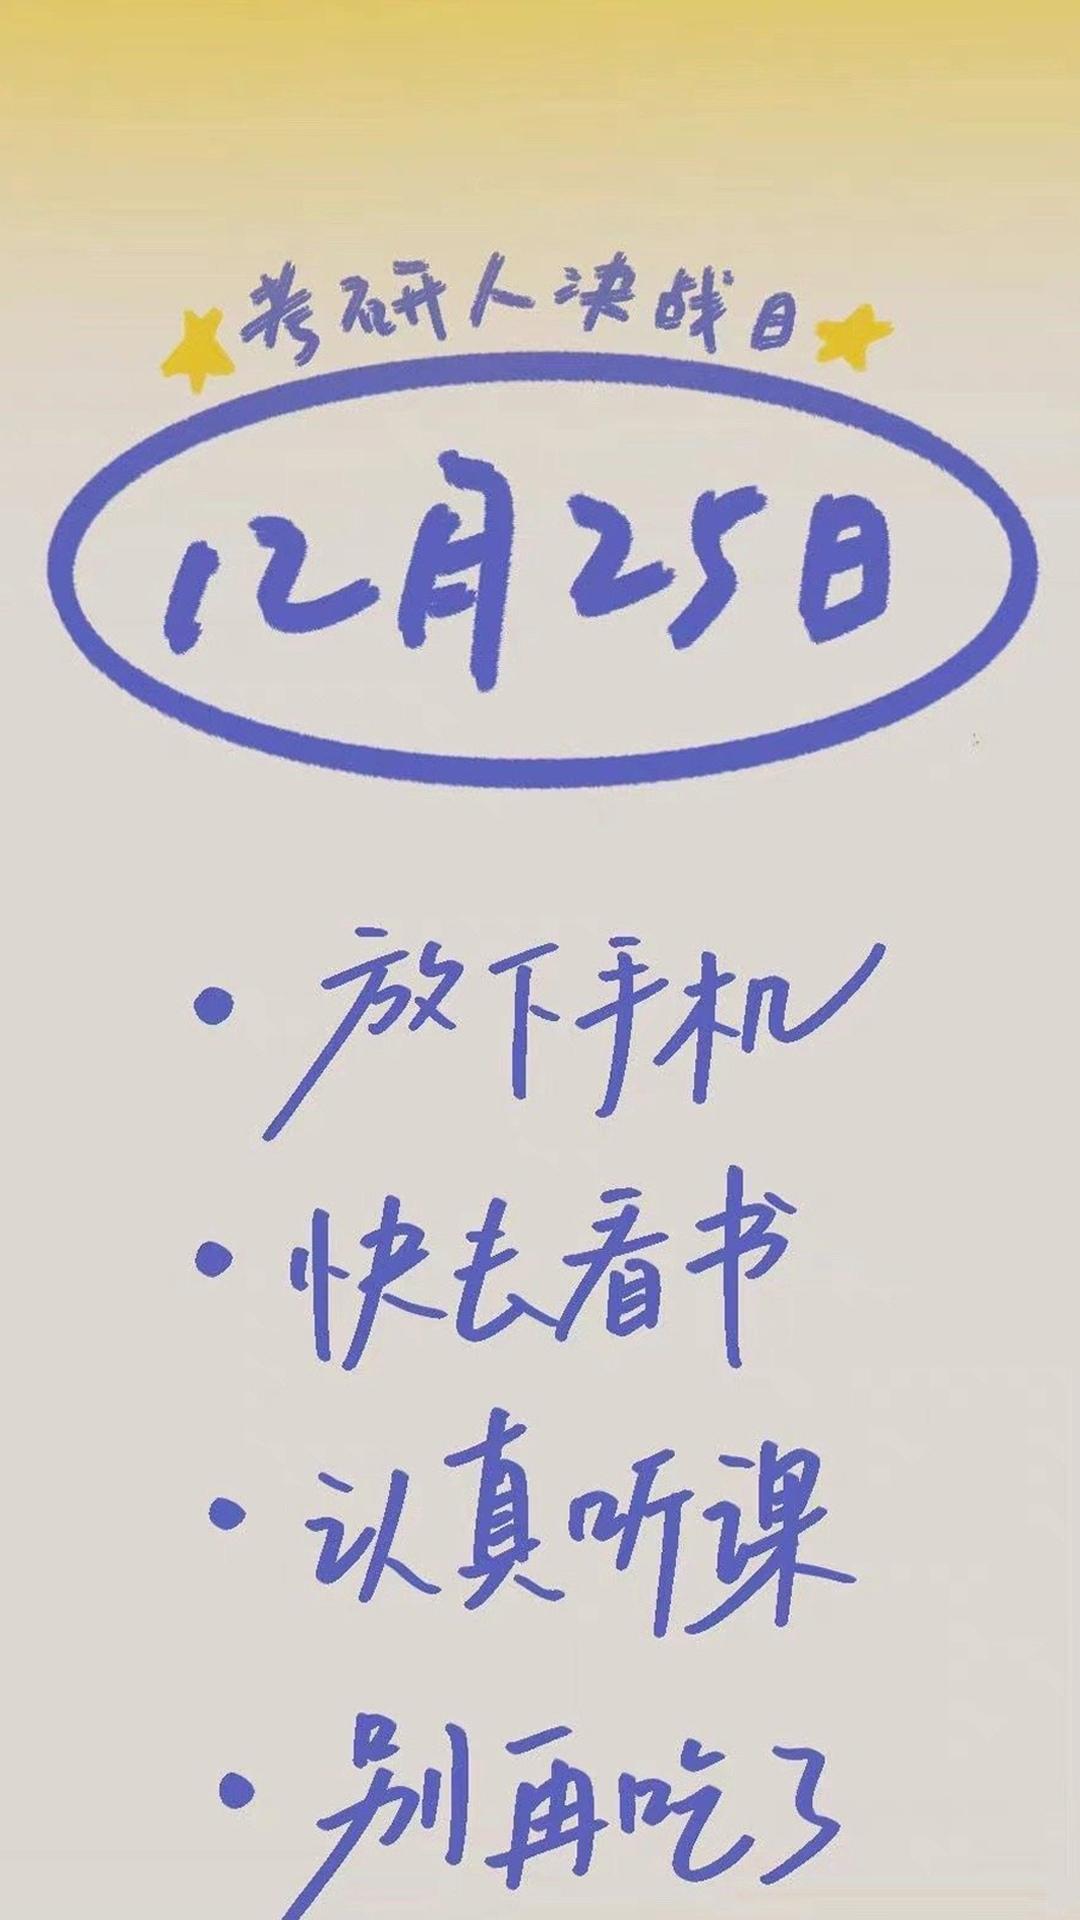 考研党励志文字图片手机壁纸